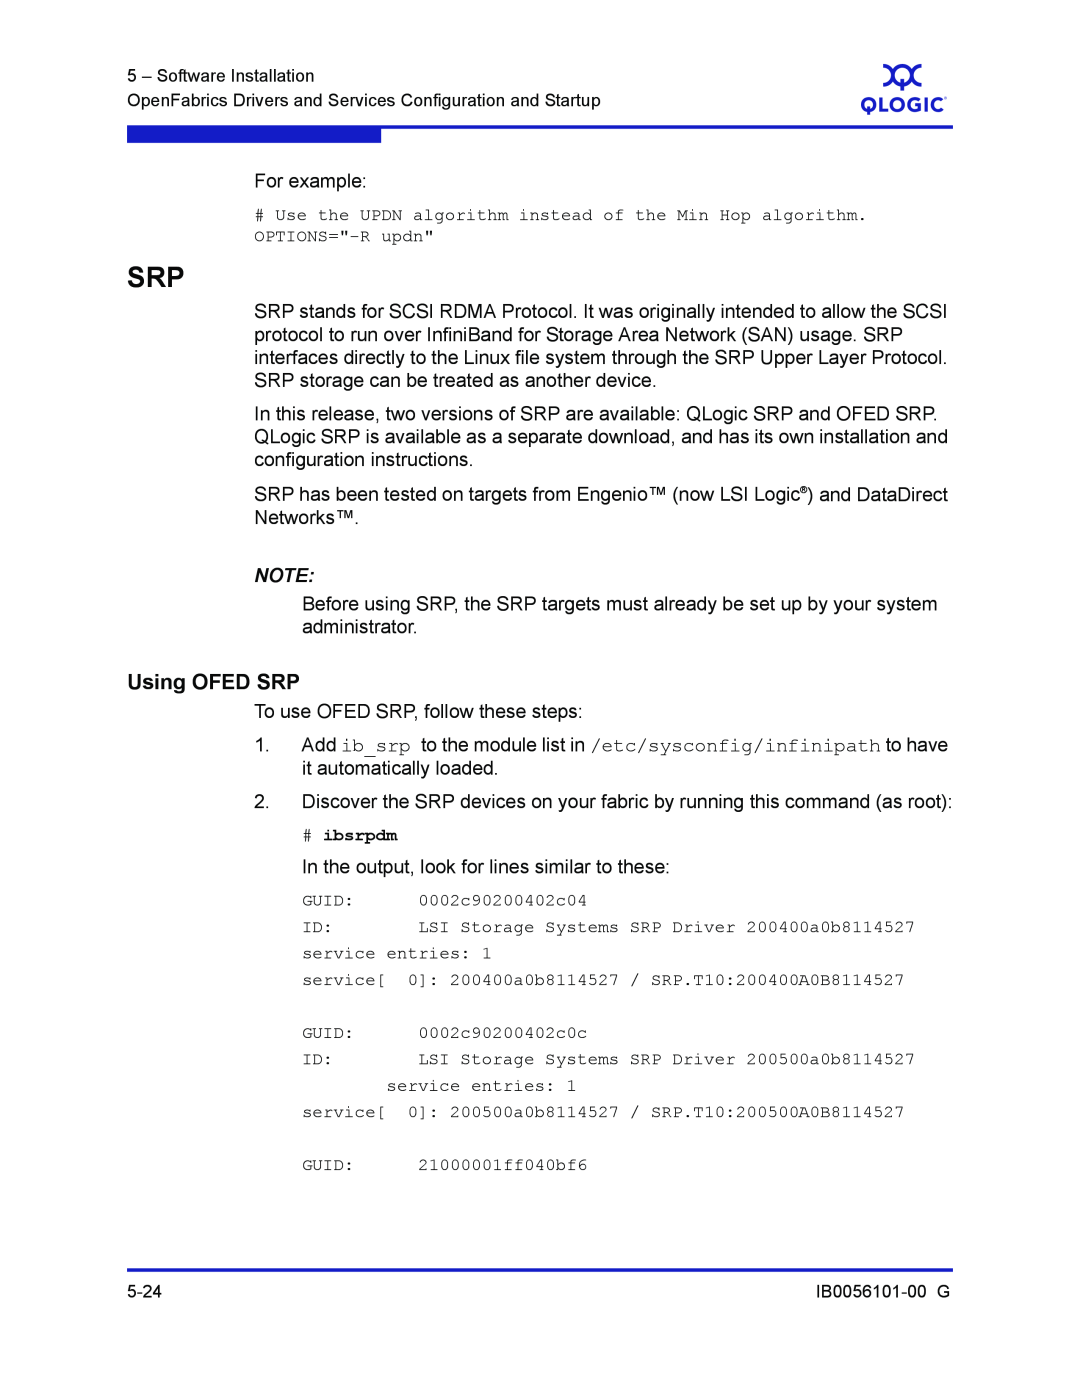 Q-Logic IB0056101-00 G manual Using OFED SRP 